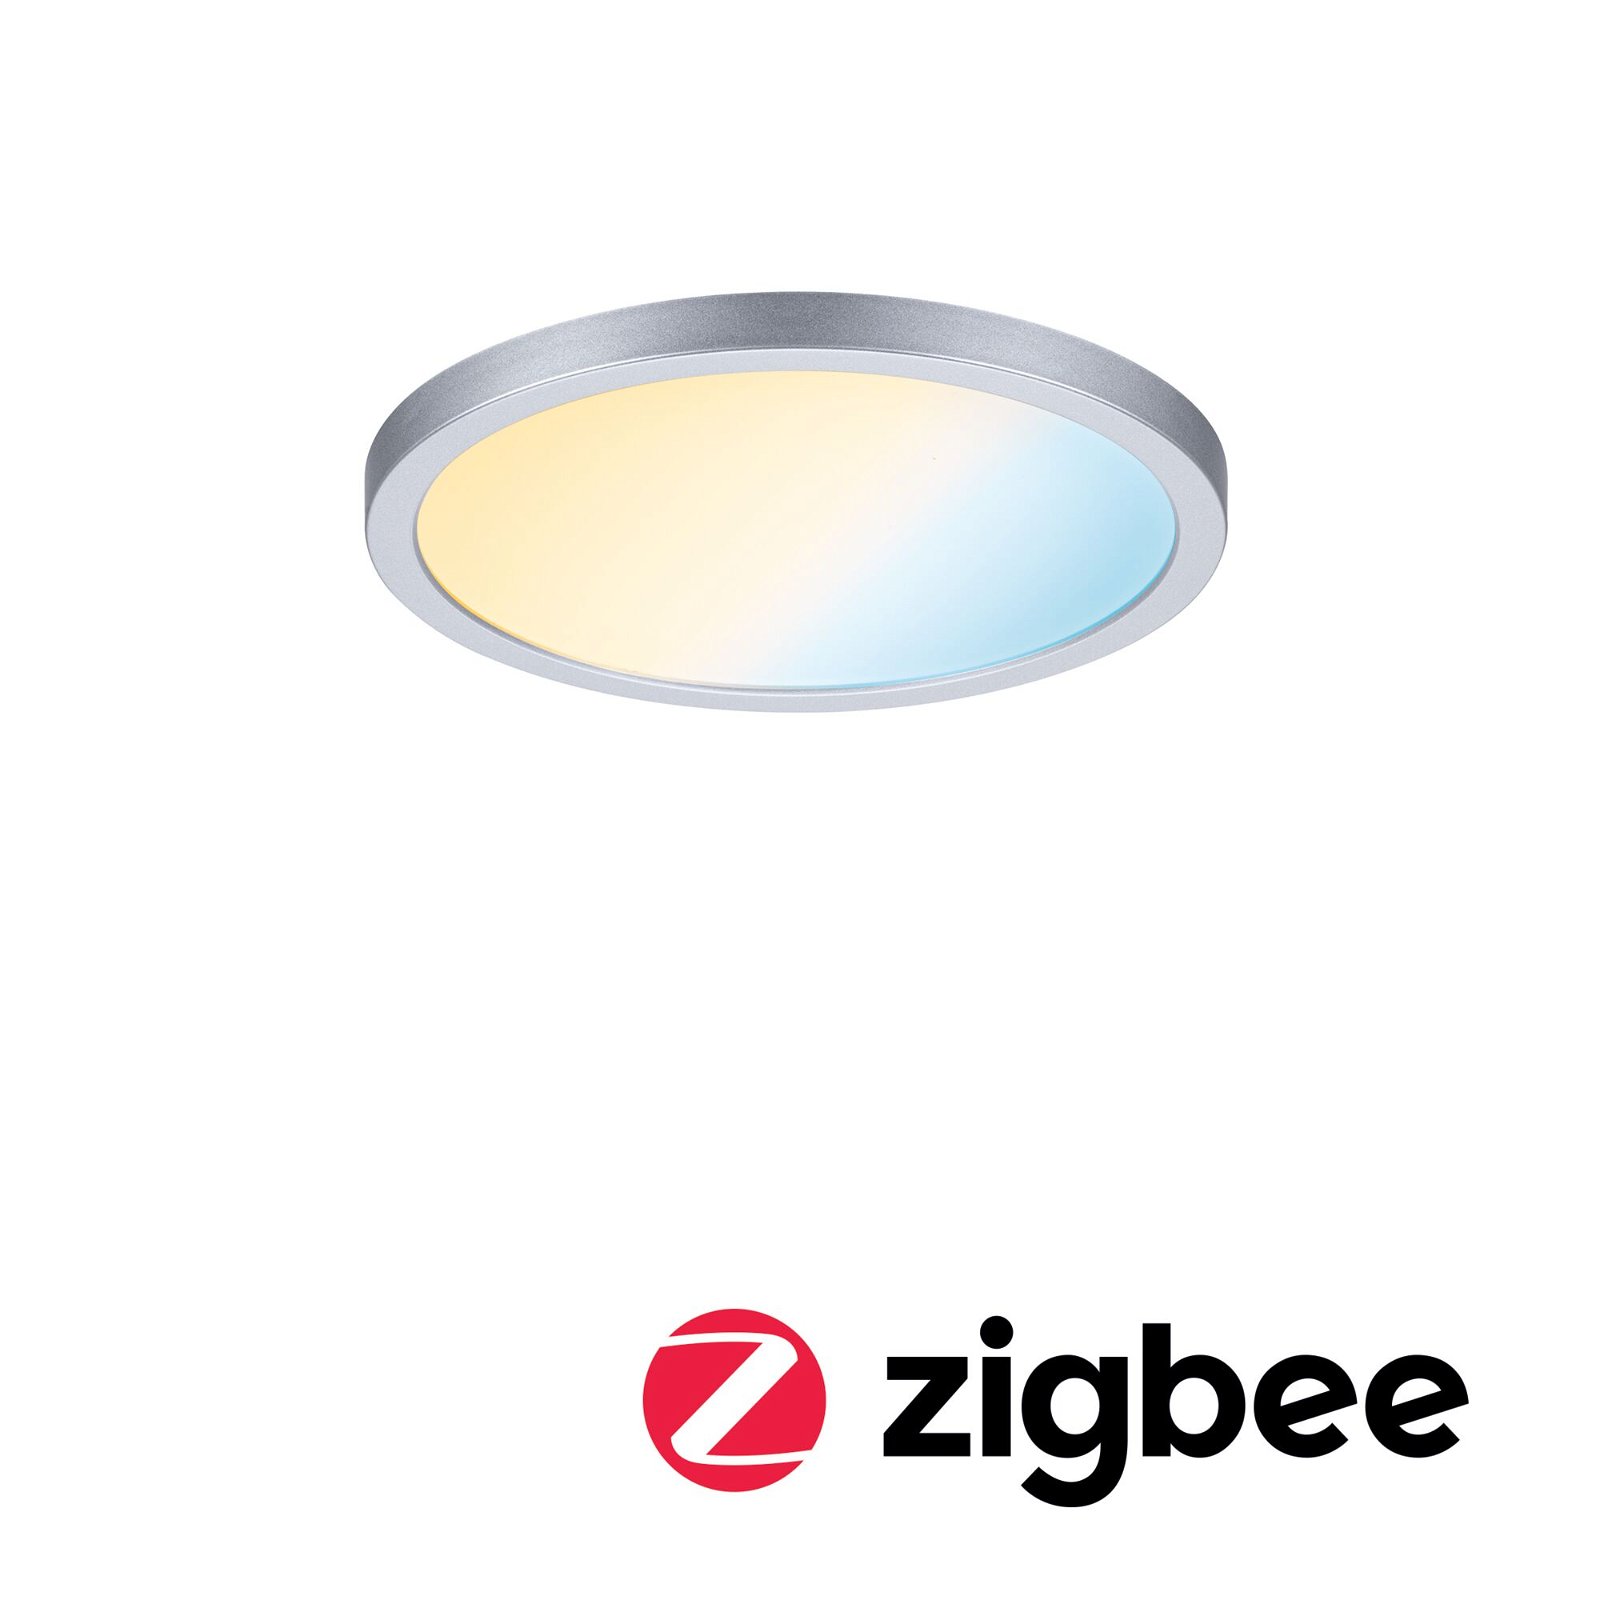 VariFit LED Einbaupanel Smart Home Zigbee 3.0 Areo IP44 rund 175mm 13W 1200lm Tunable White Chrom matt dimmbar